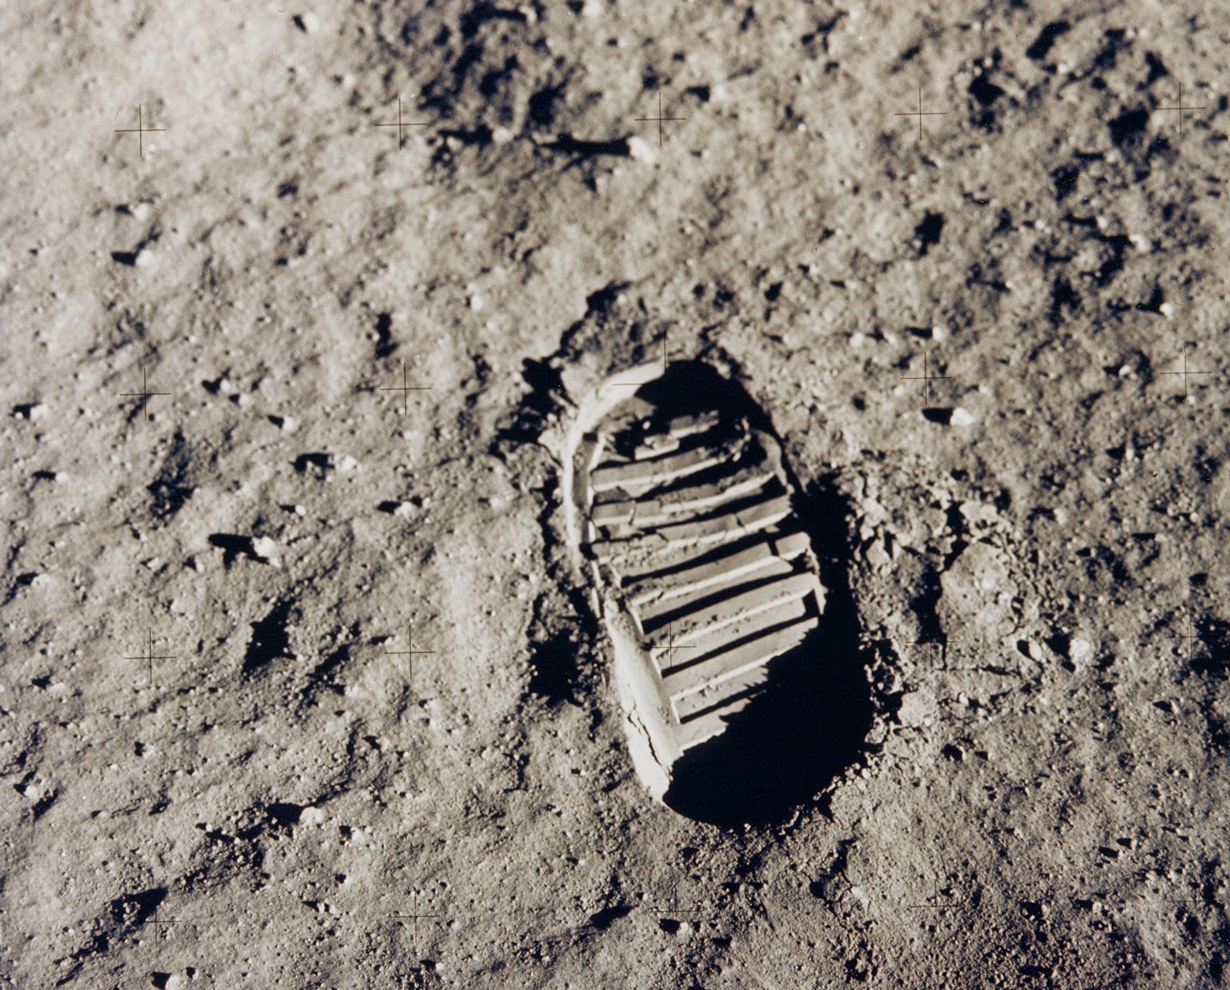 20 июля 1969 года. След Базза Олдрина на Луне. Астронавт сделал снимок отпечатка своего ботинка на лунной почве во время прогулки по спутнику Земли. Олдрин выполнял обязанности одного из членов экипажа миссии «Аполлон-11» — первую в истории человечества пилотируемую посадку на Луну. (NASA on The Commons)